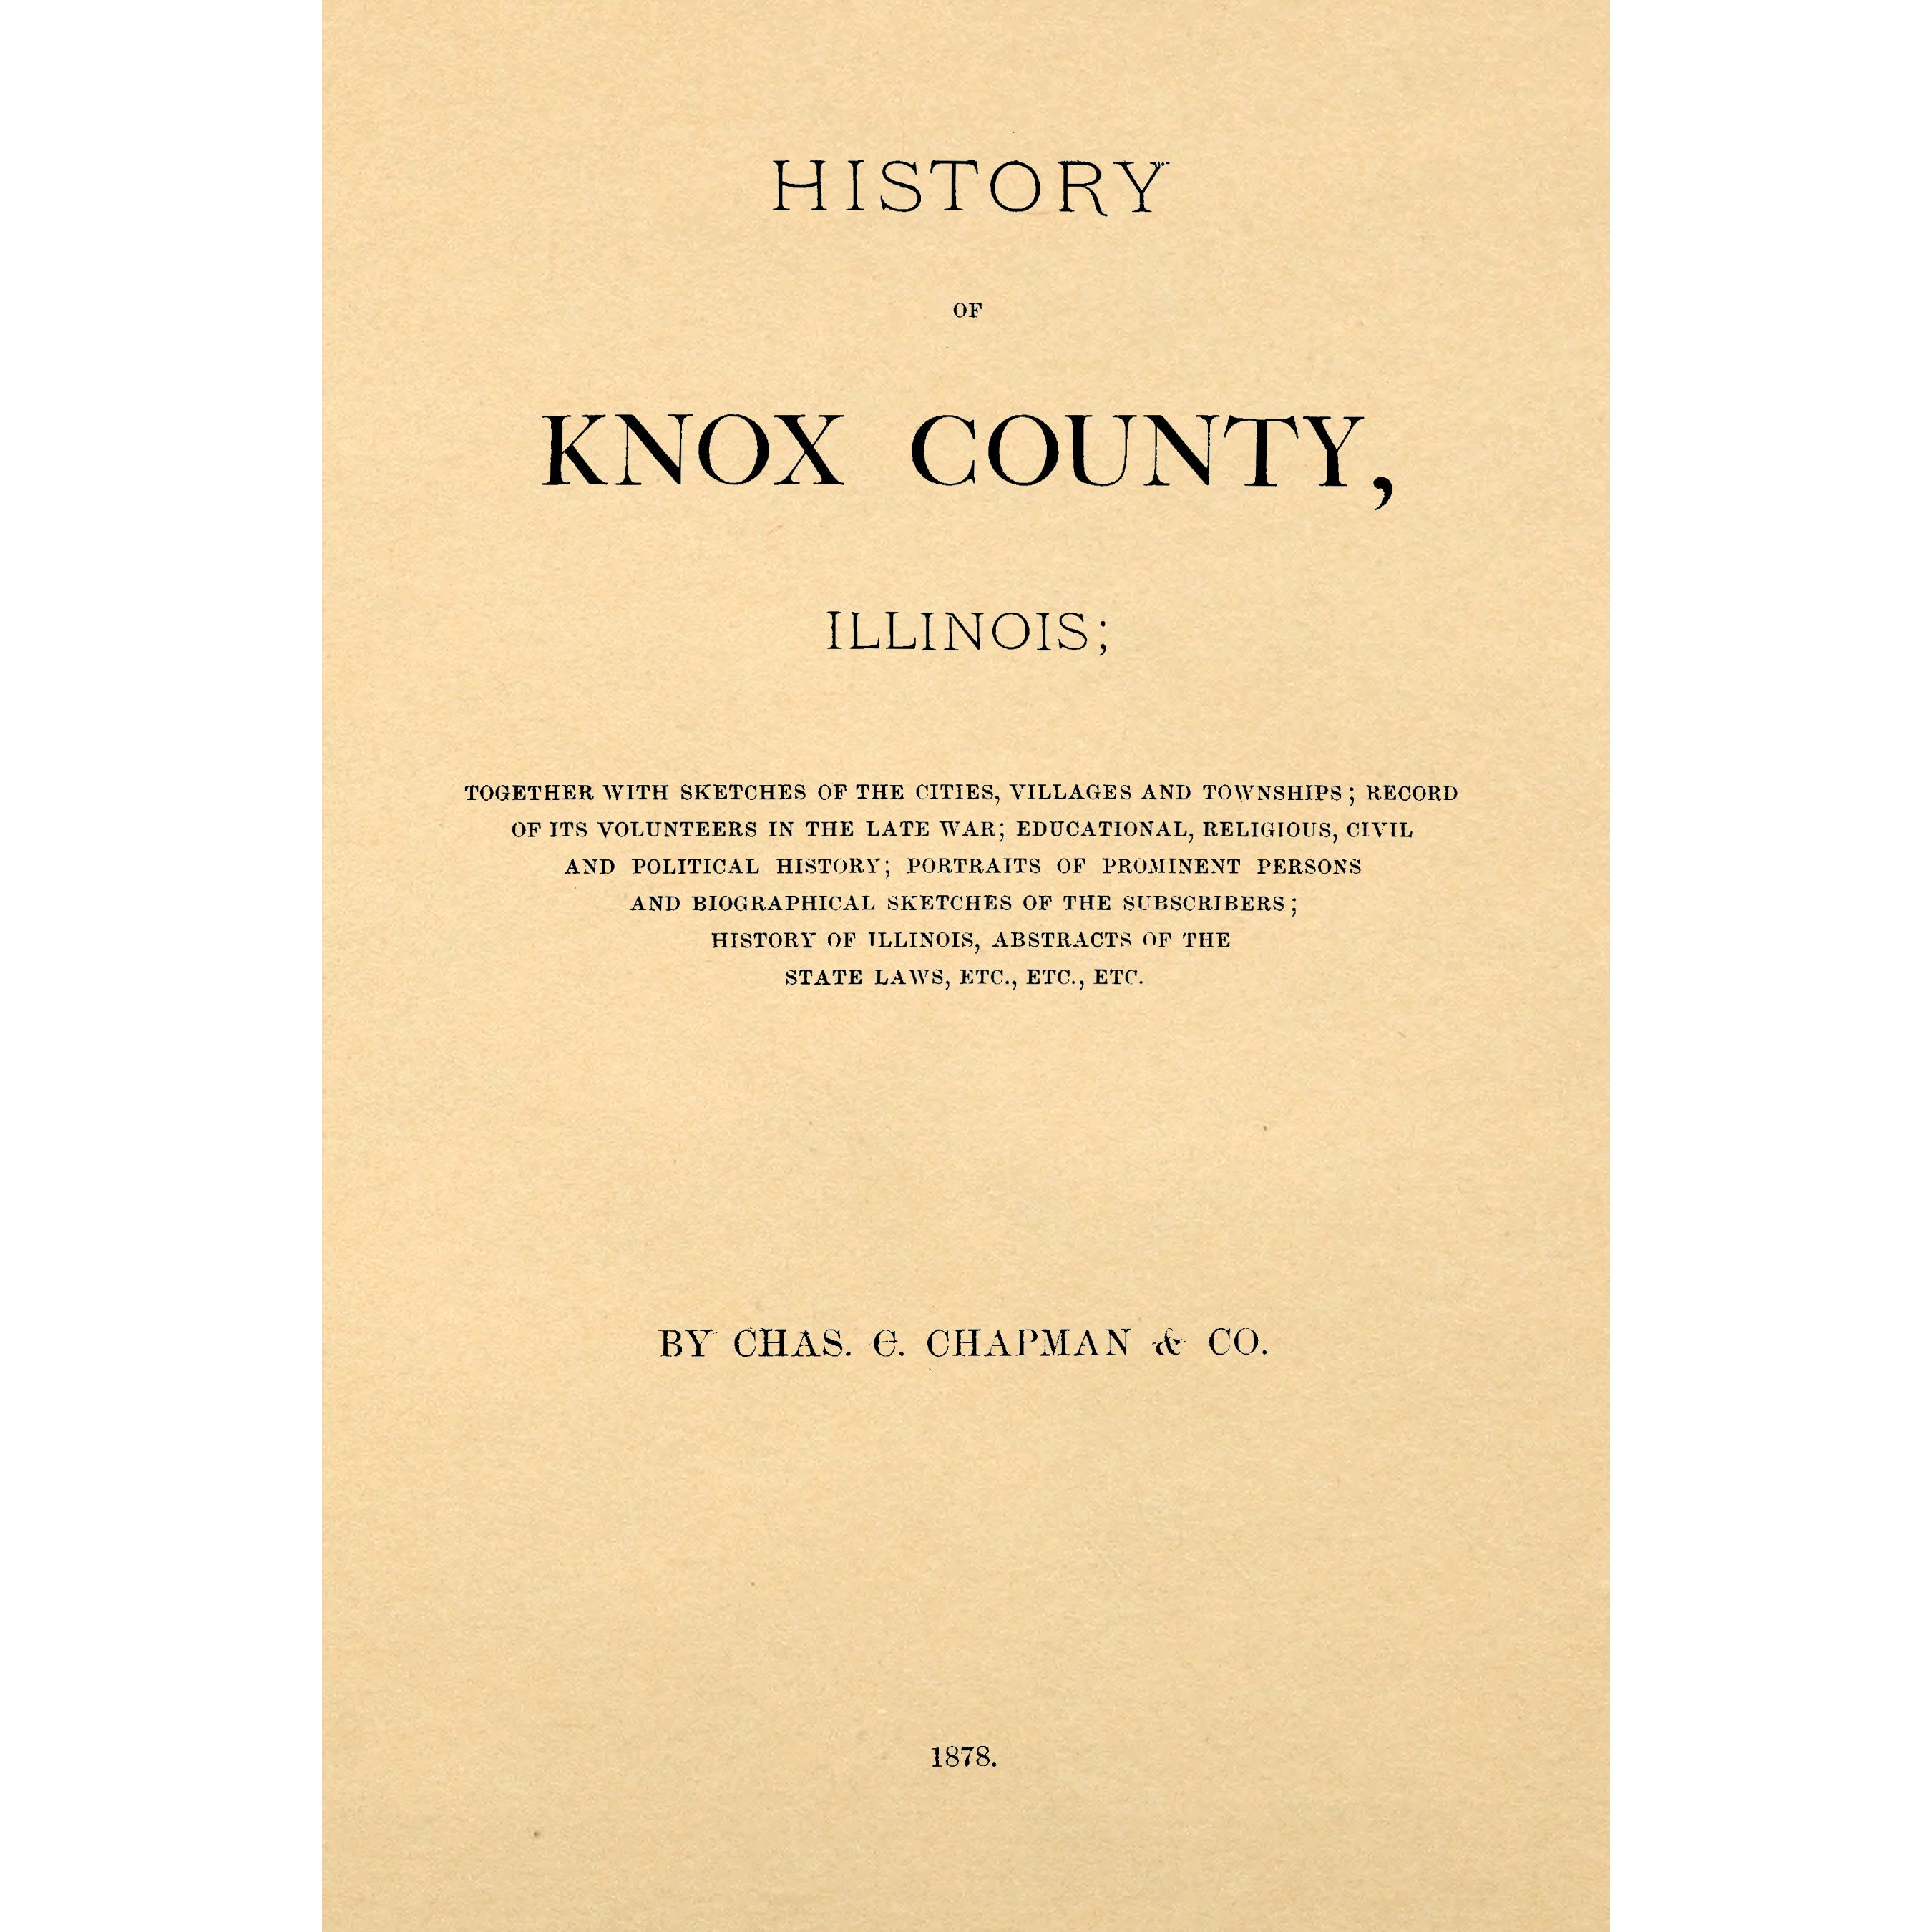 History of Knox county, Illinois